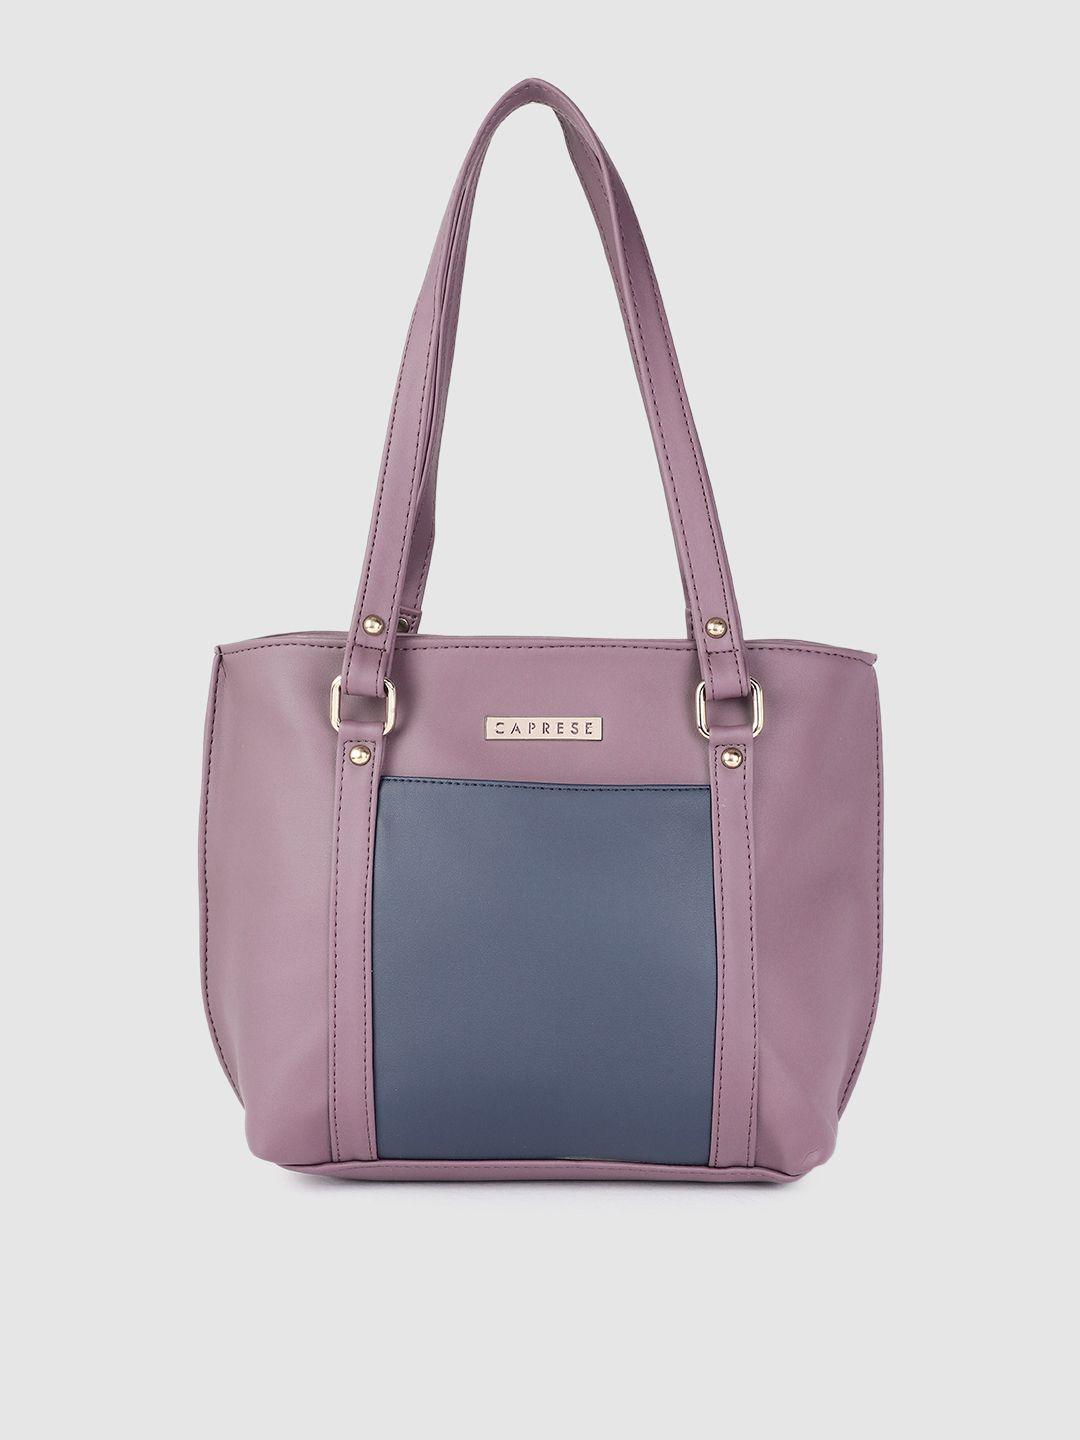 caprese violet colourblocked structured shoulder bag